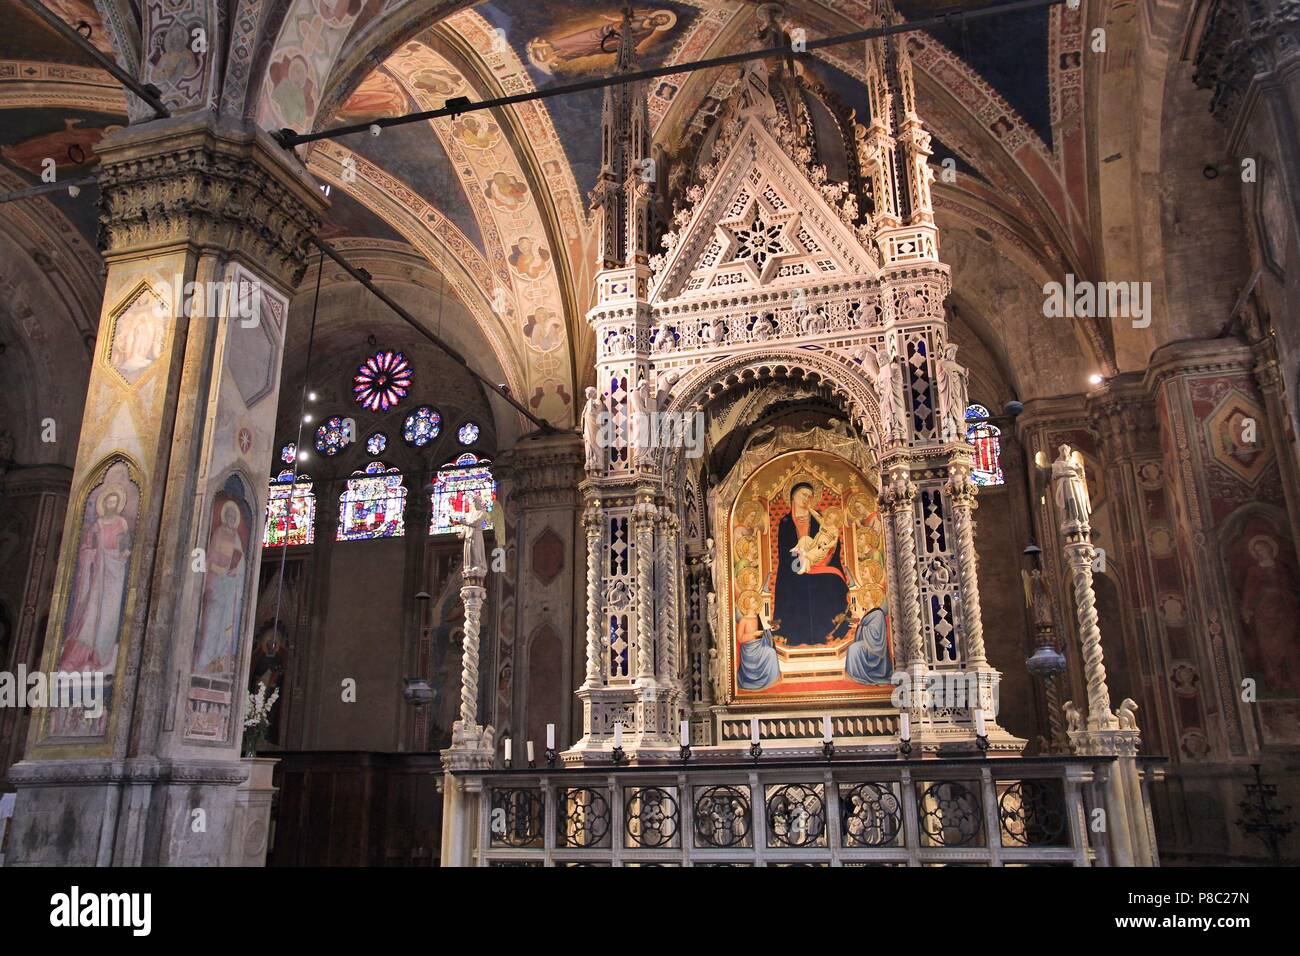 FLORENCE, ITALIE - 1 mai 2015 : vue de l'intérieur de l'église Orsanmichele à Florence, Italie. Le monument a été construit en 1337 et est situé sur la Via Calzaiuol Banque D'Images